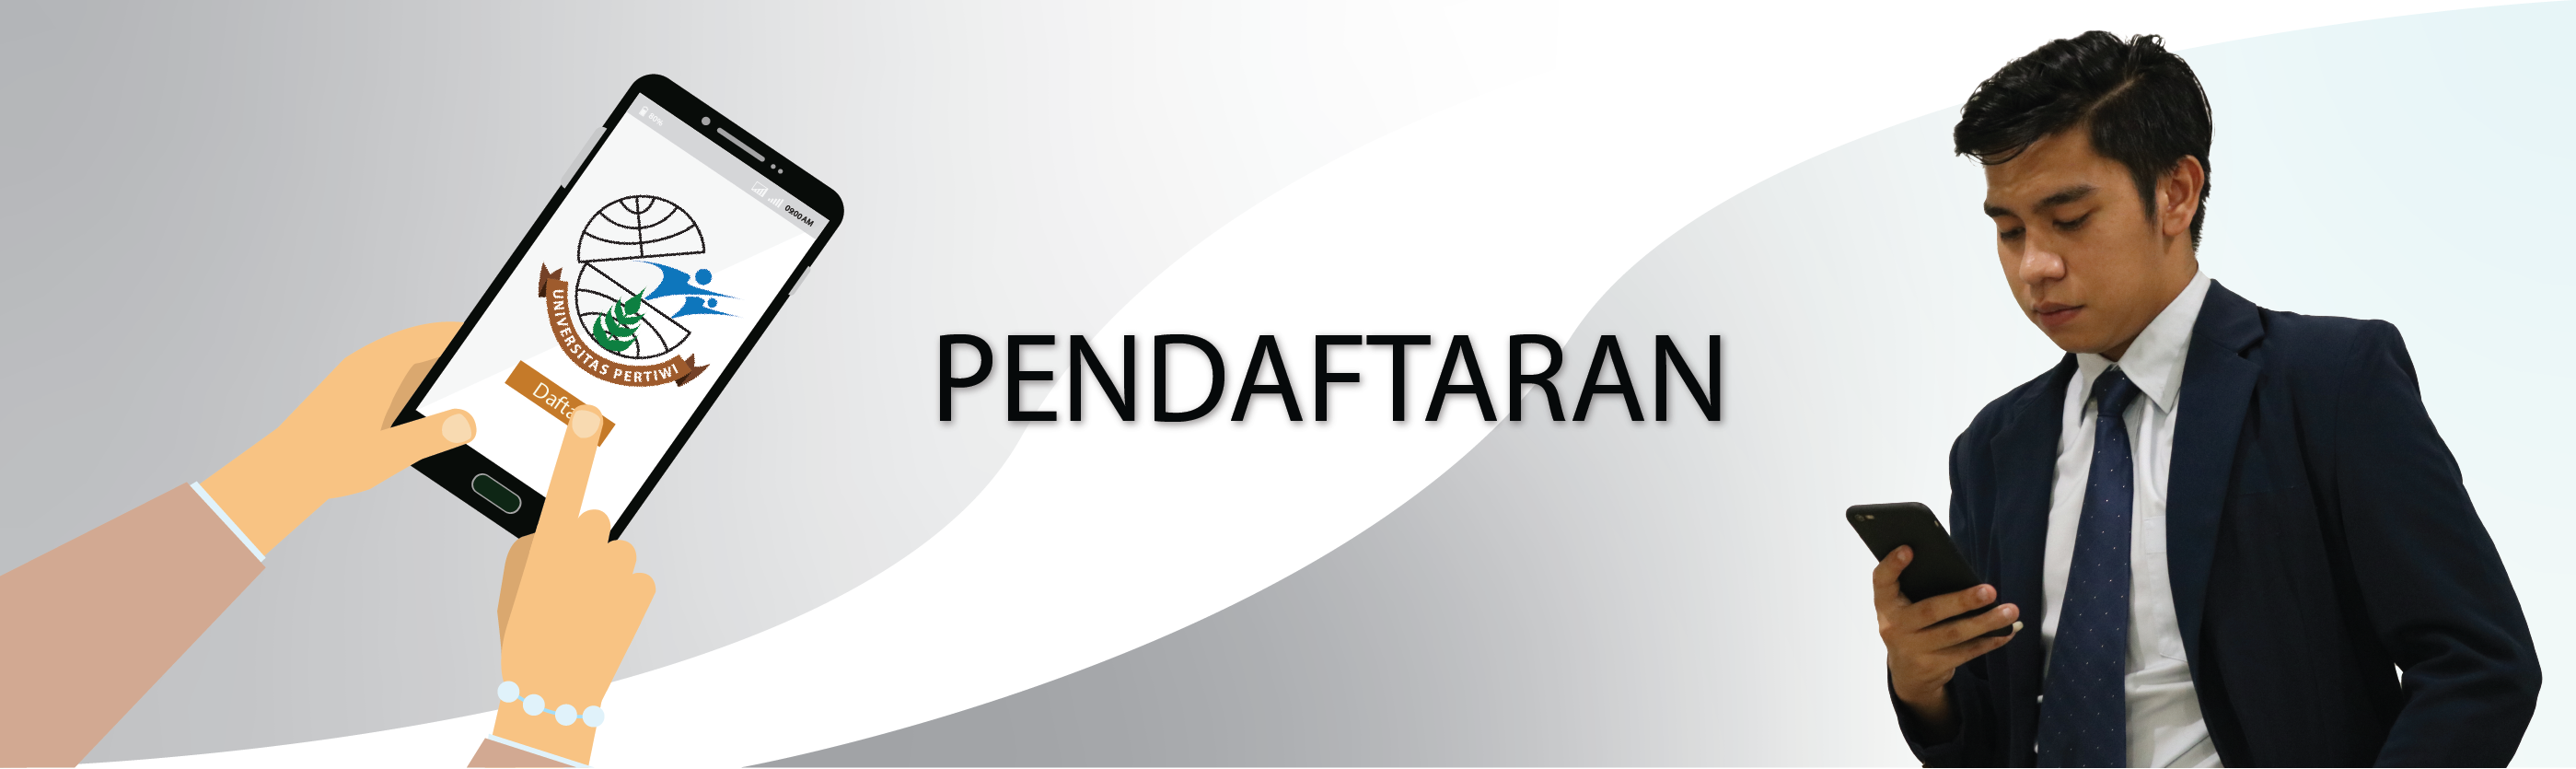 SLIDE PENDAFTARAN2